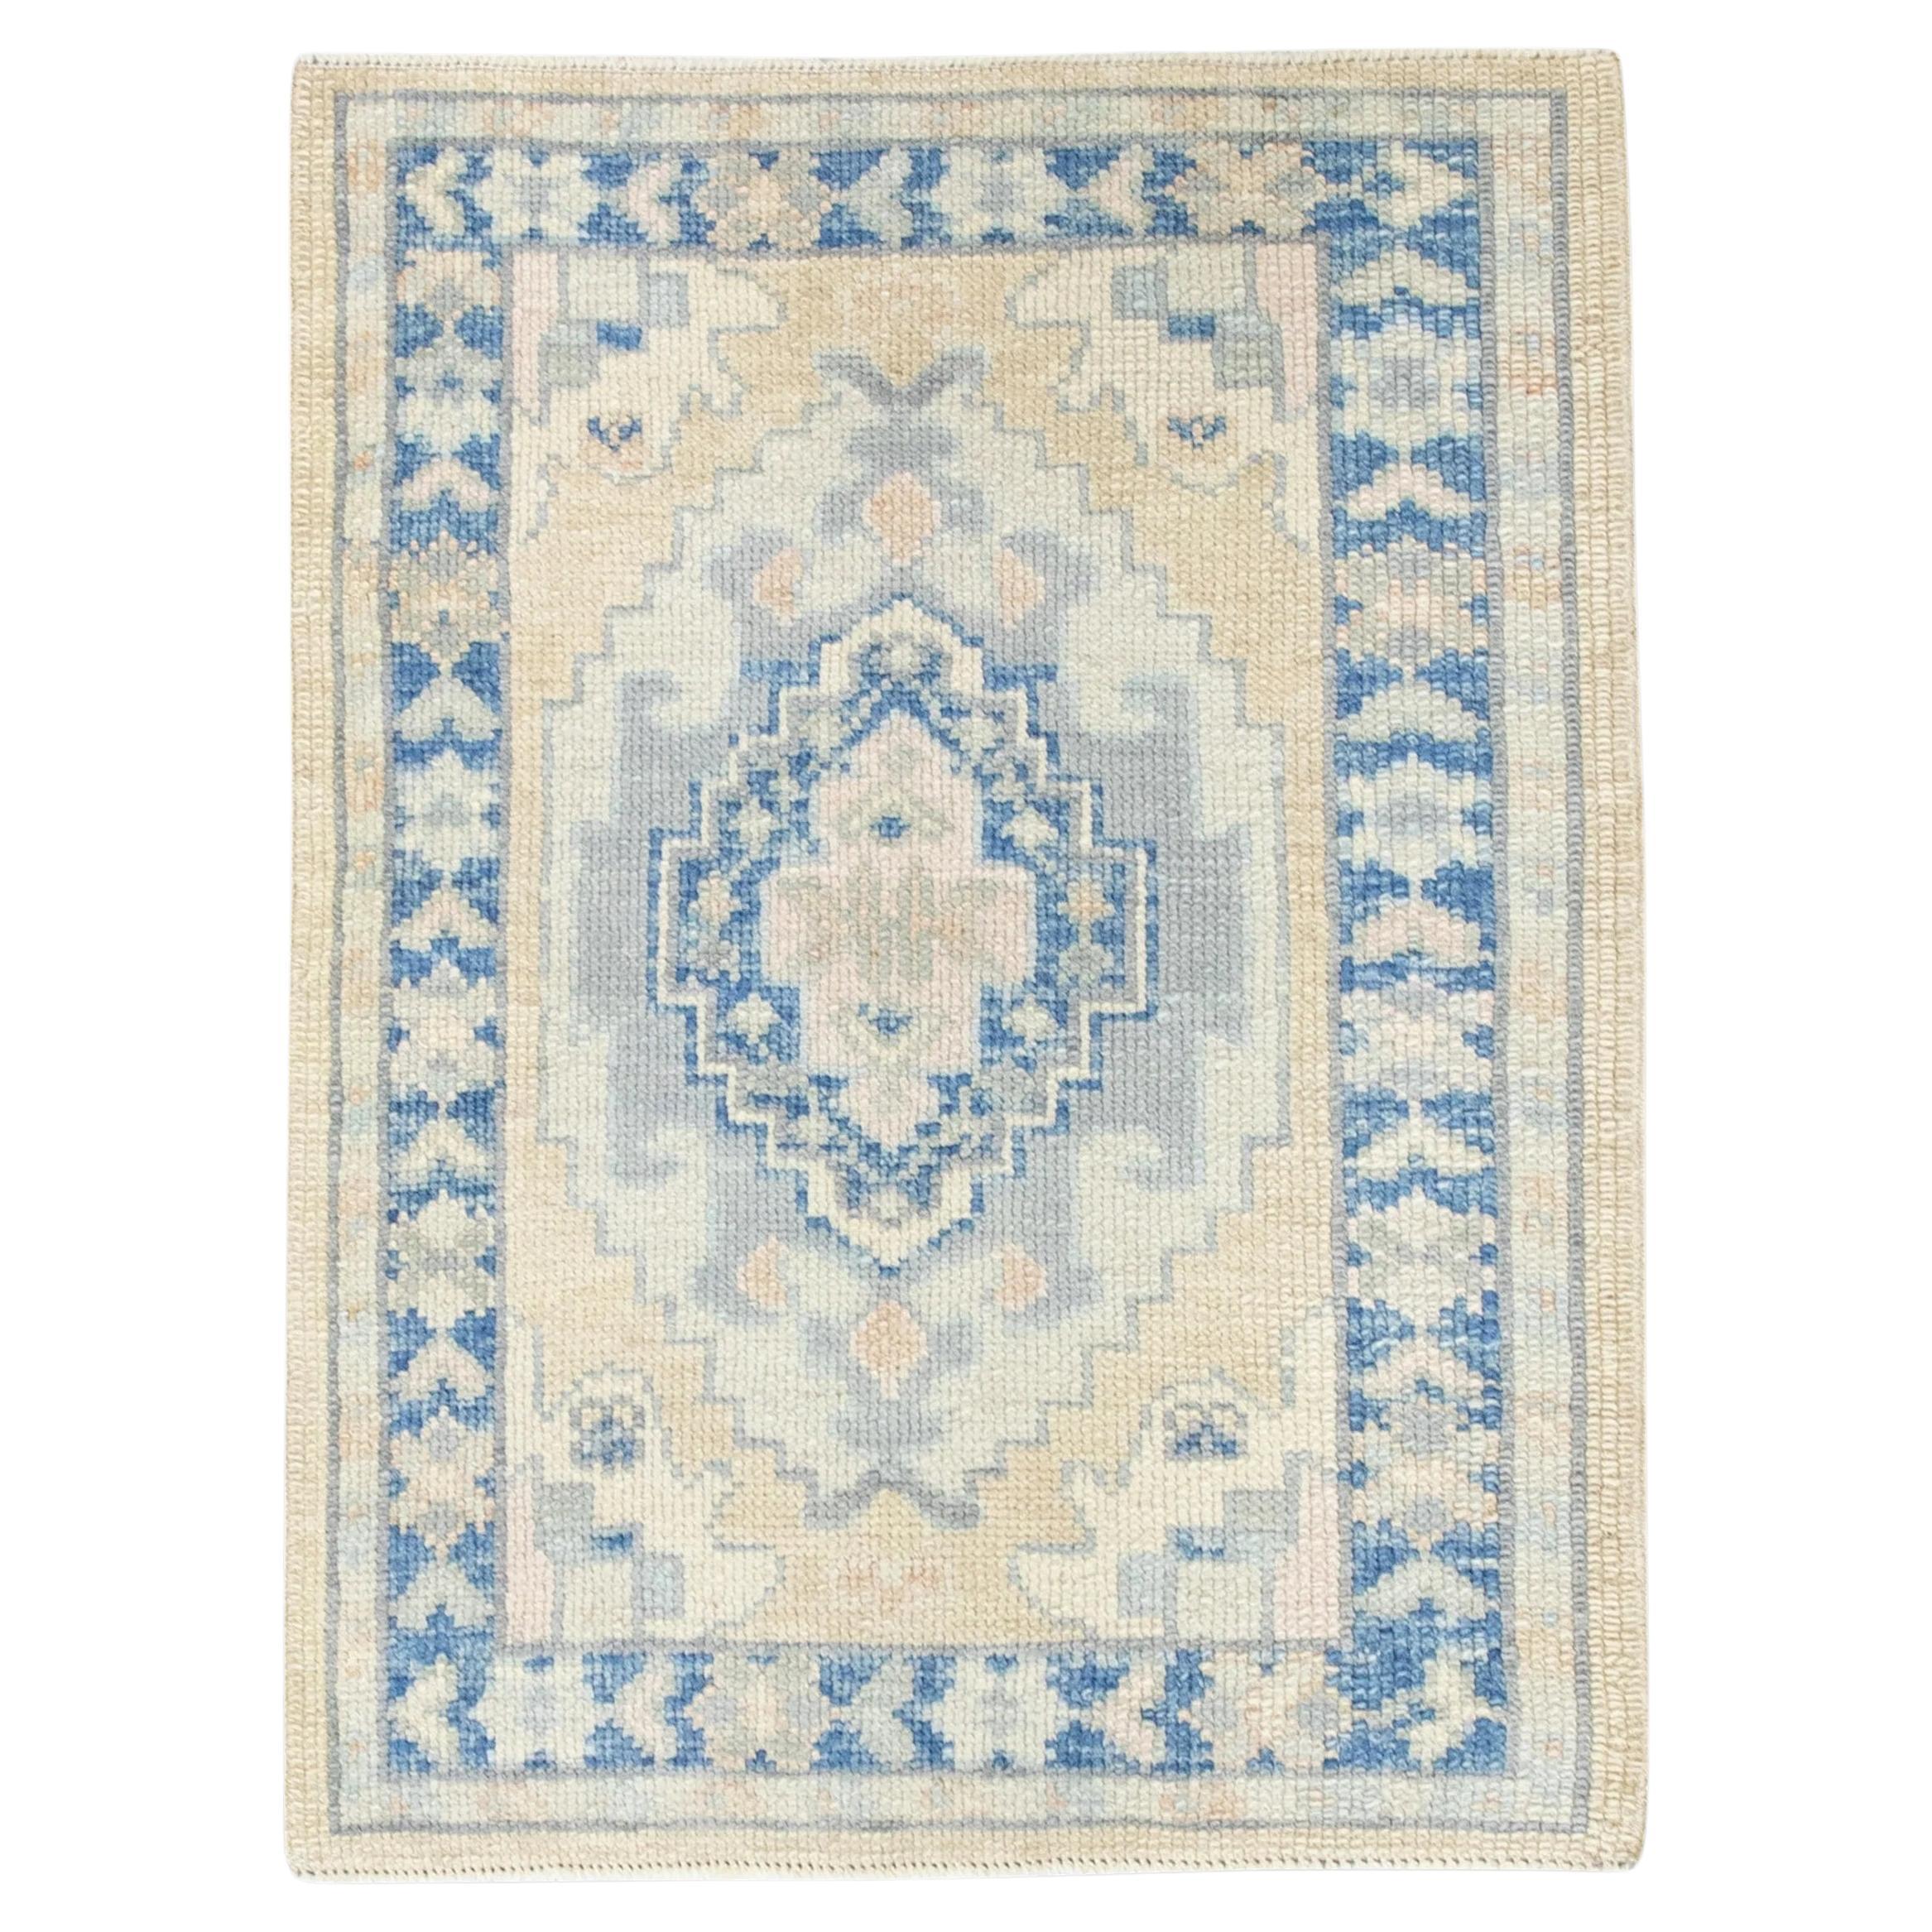 Handgewebter türkischer Oushak-Teppich aus Wolle in Blau und Gelb mit geometrischem Design 2'3" x 2'11"